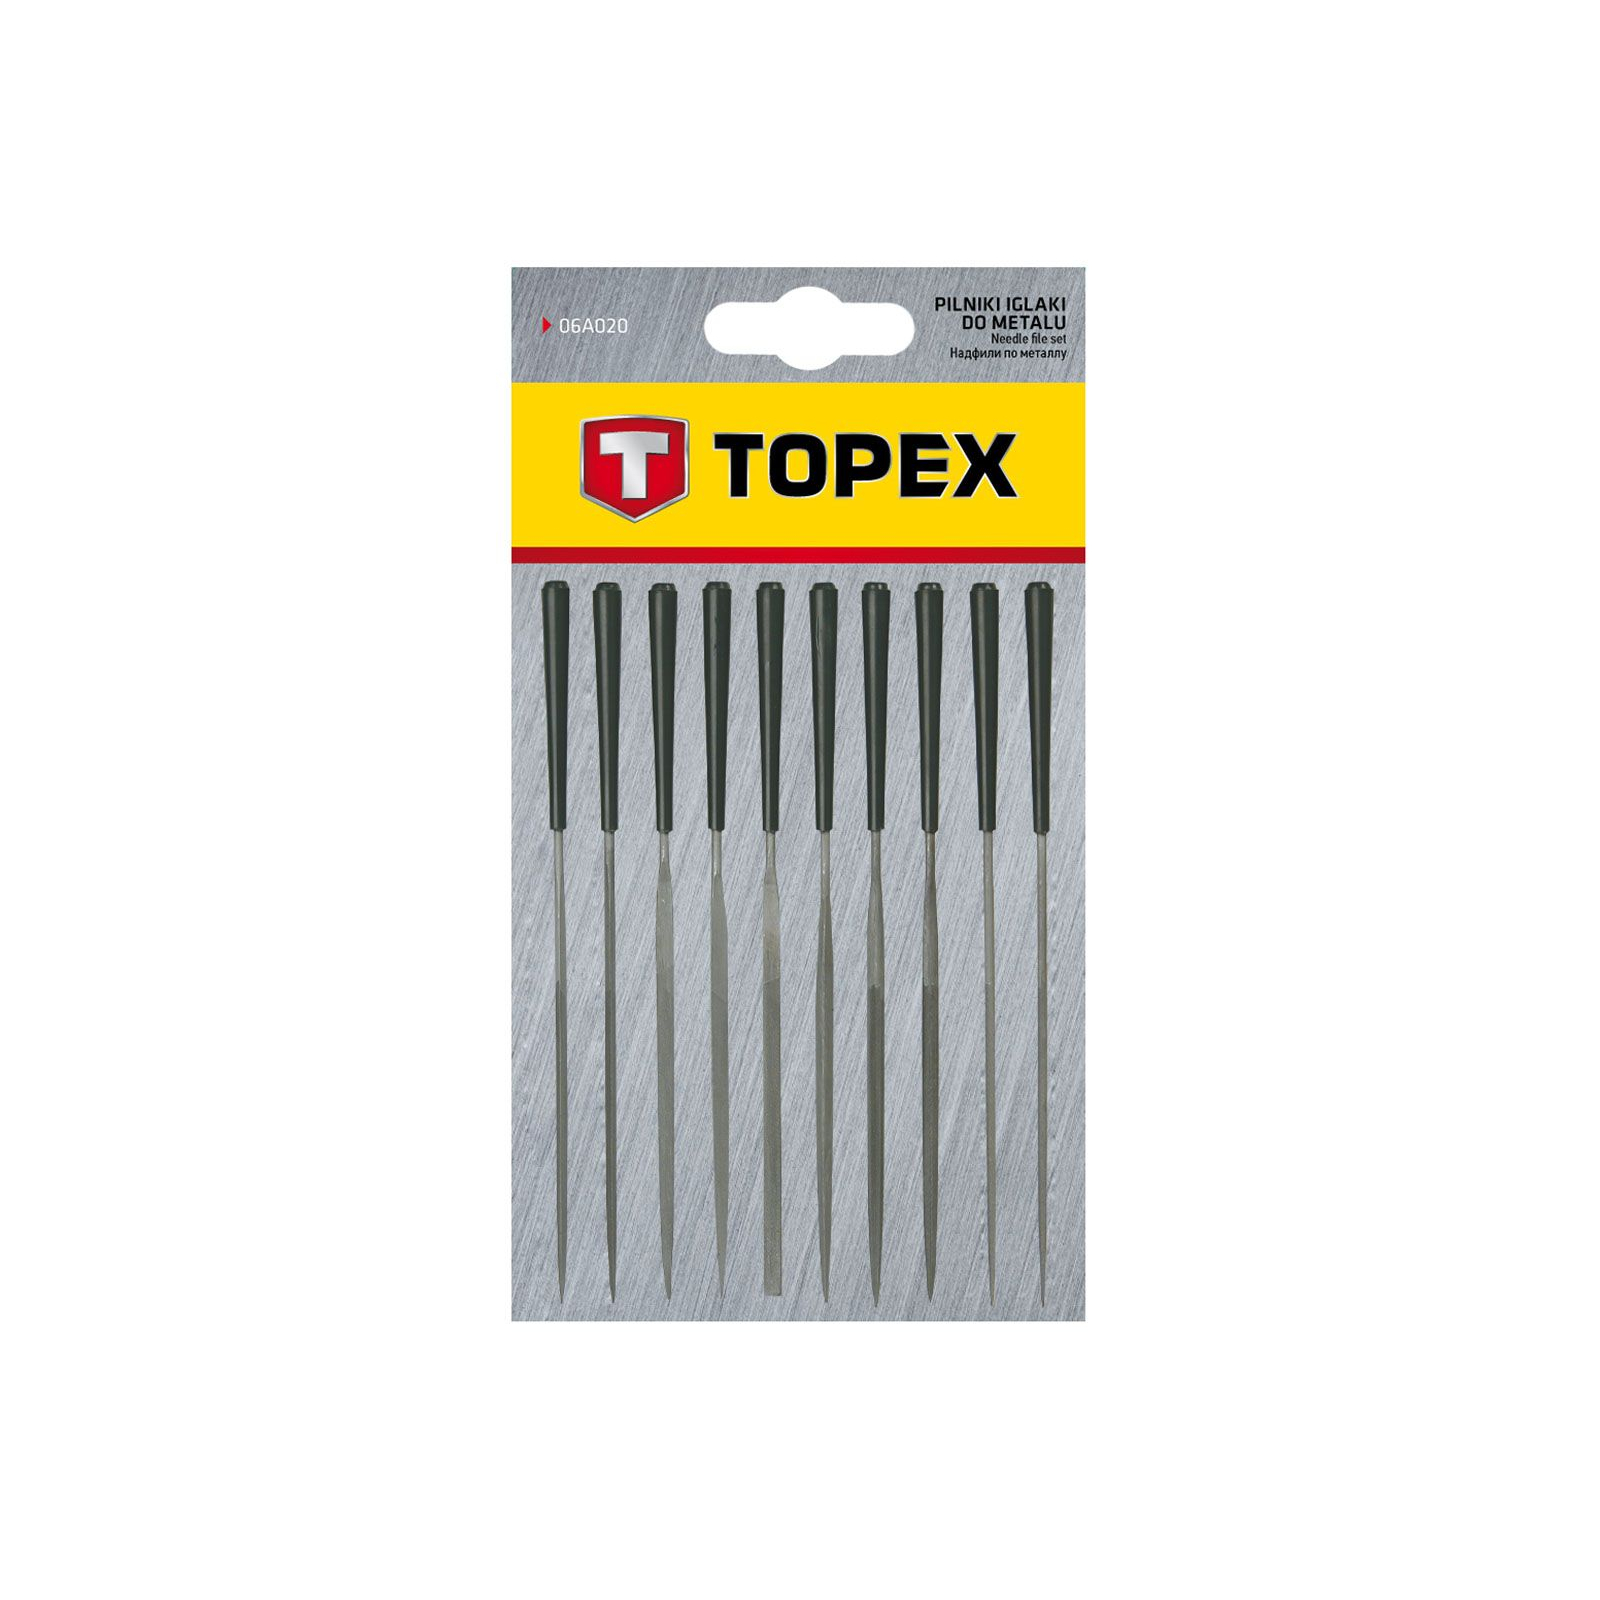 Набор надфилей Topex игольчатые по металлу, набор 10 шт. (06A020) изображение 2